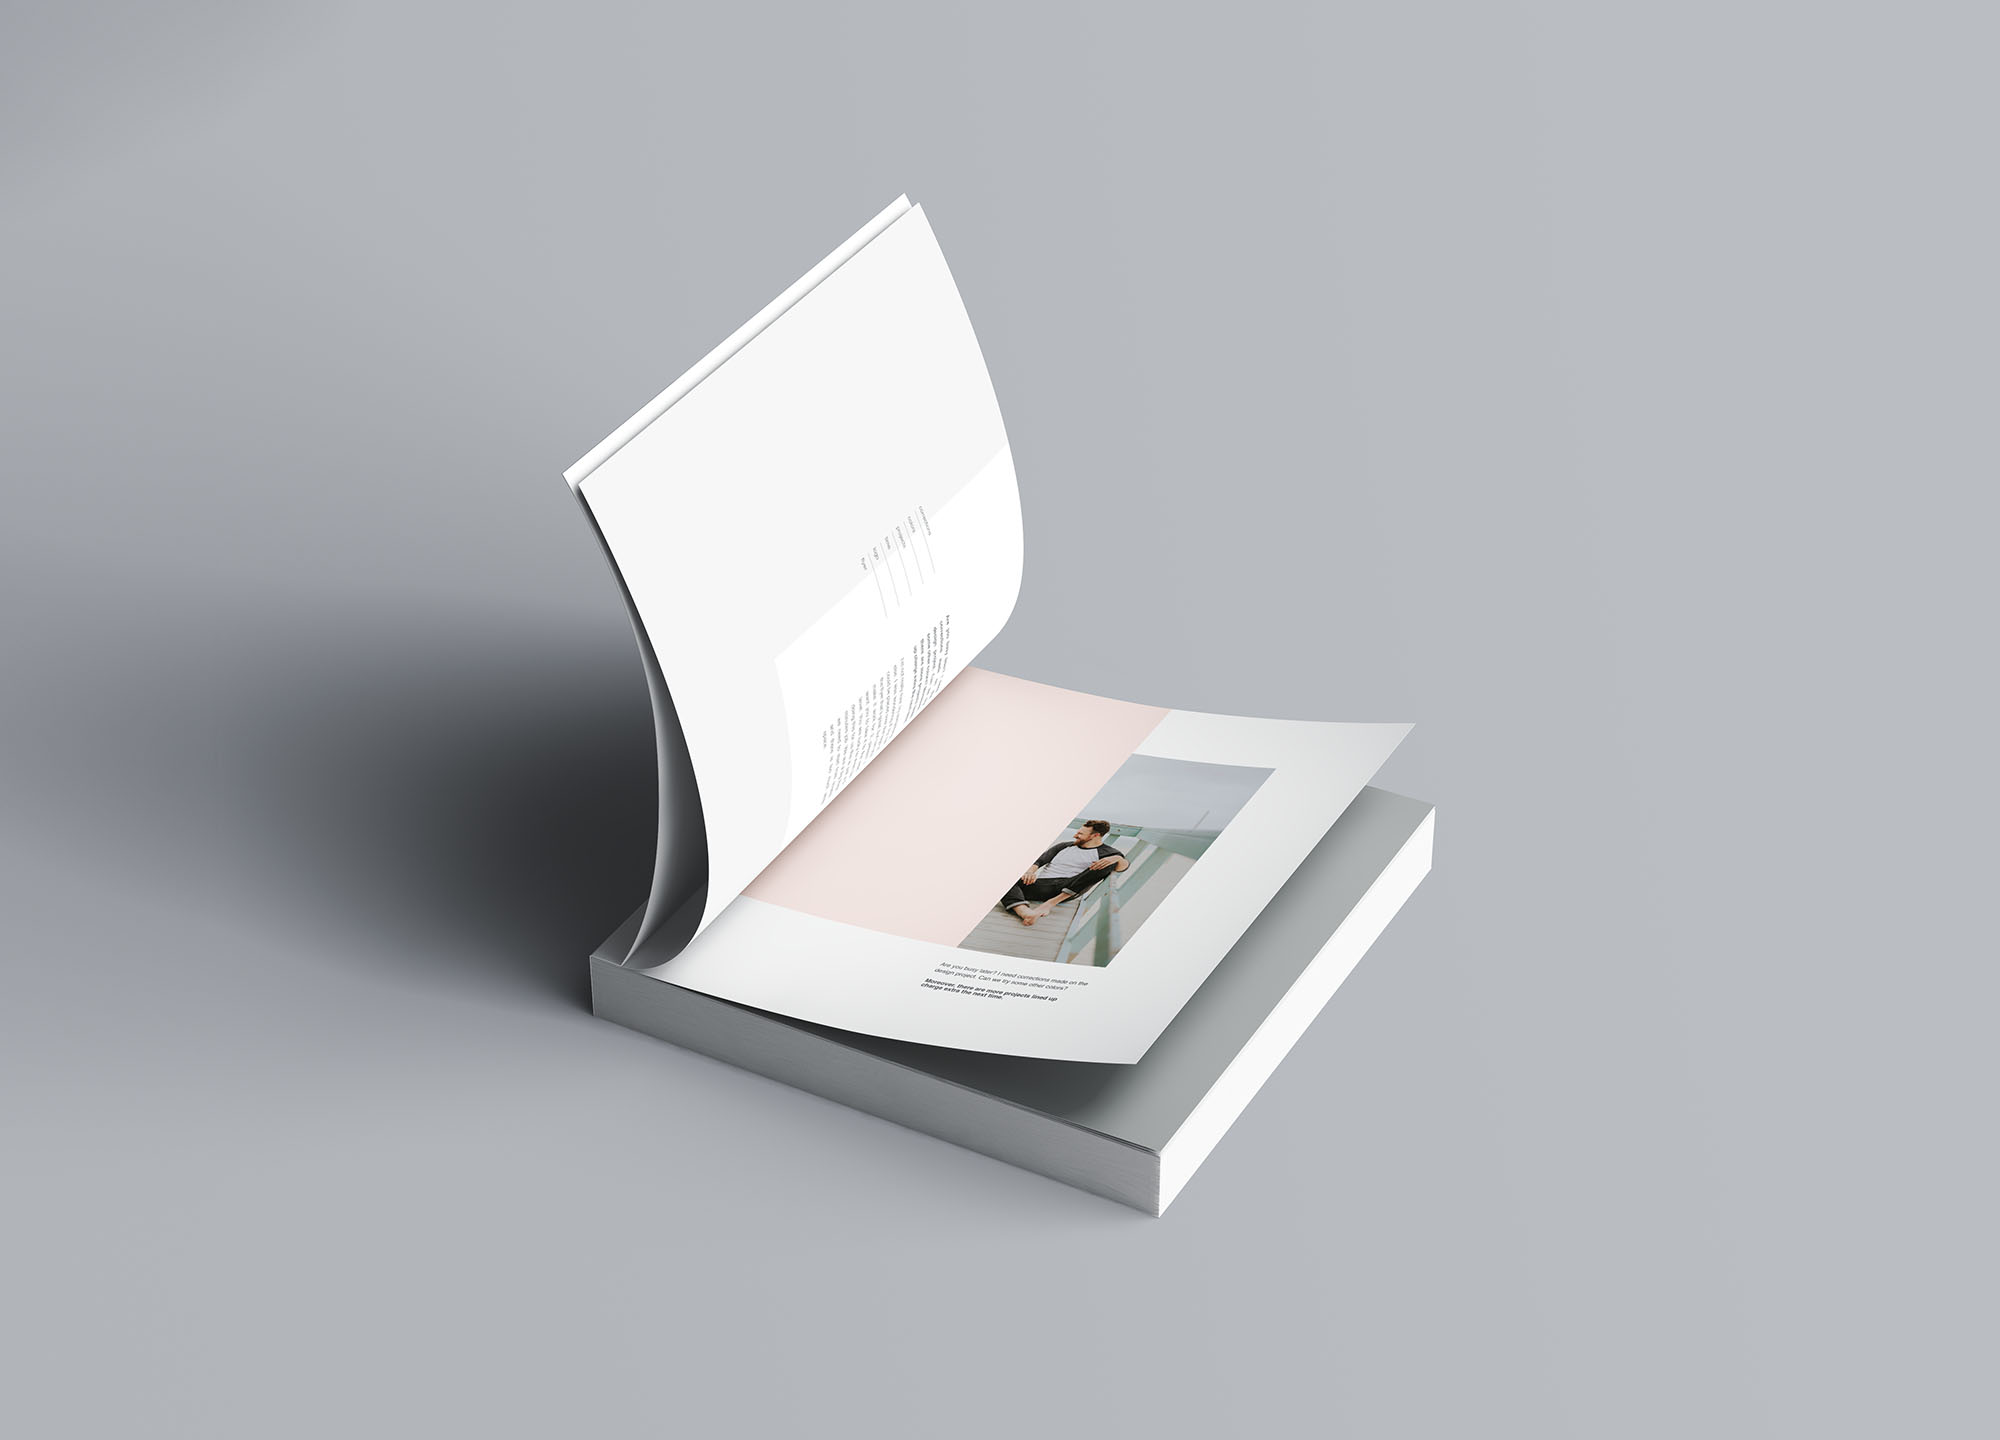 方形软封图书内页版式设计效果图样机素材中国精选 Square Softcover Book Mockup插图(5)